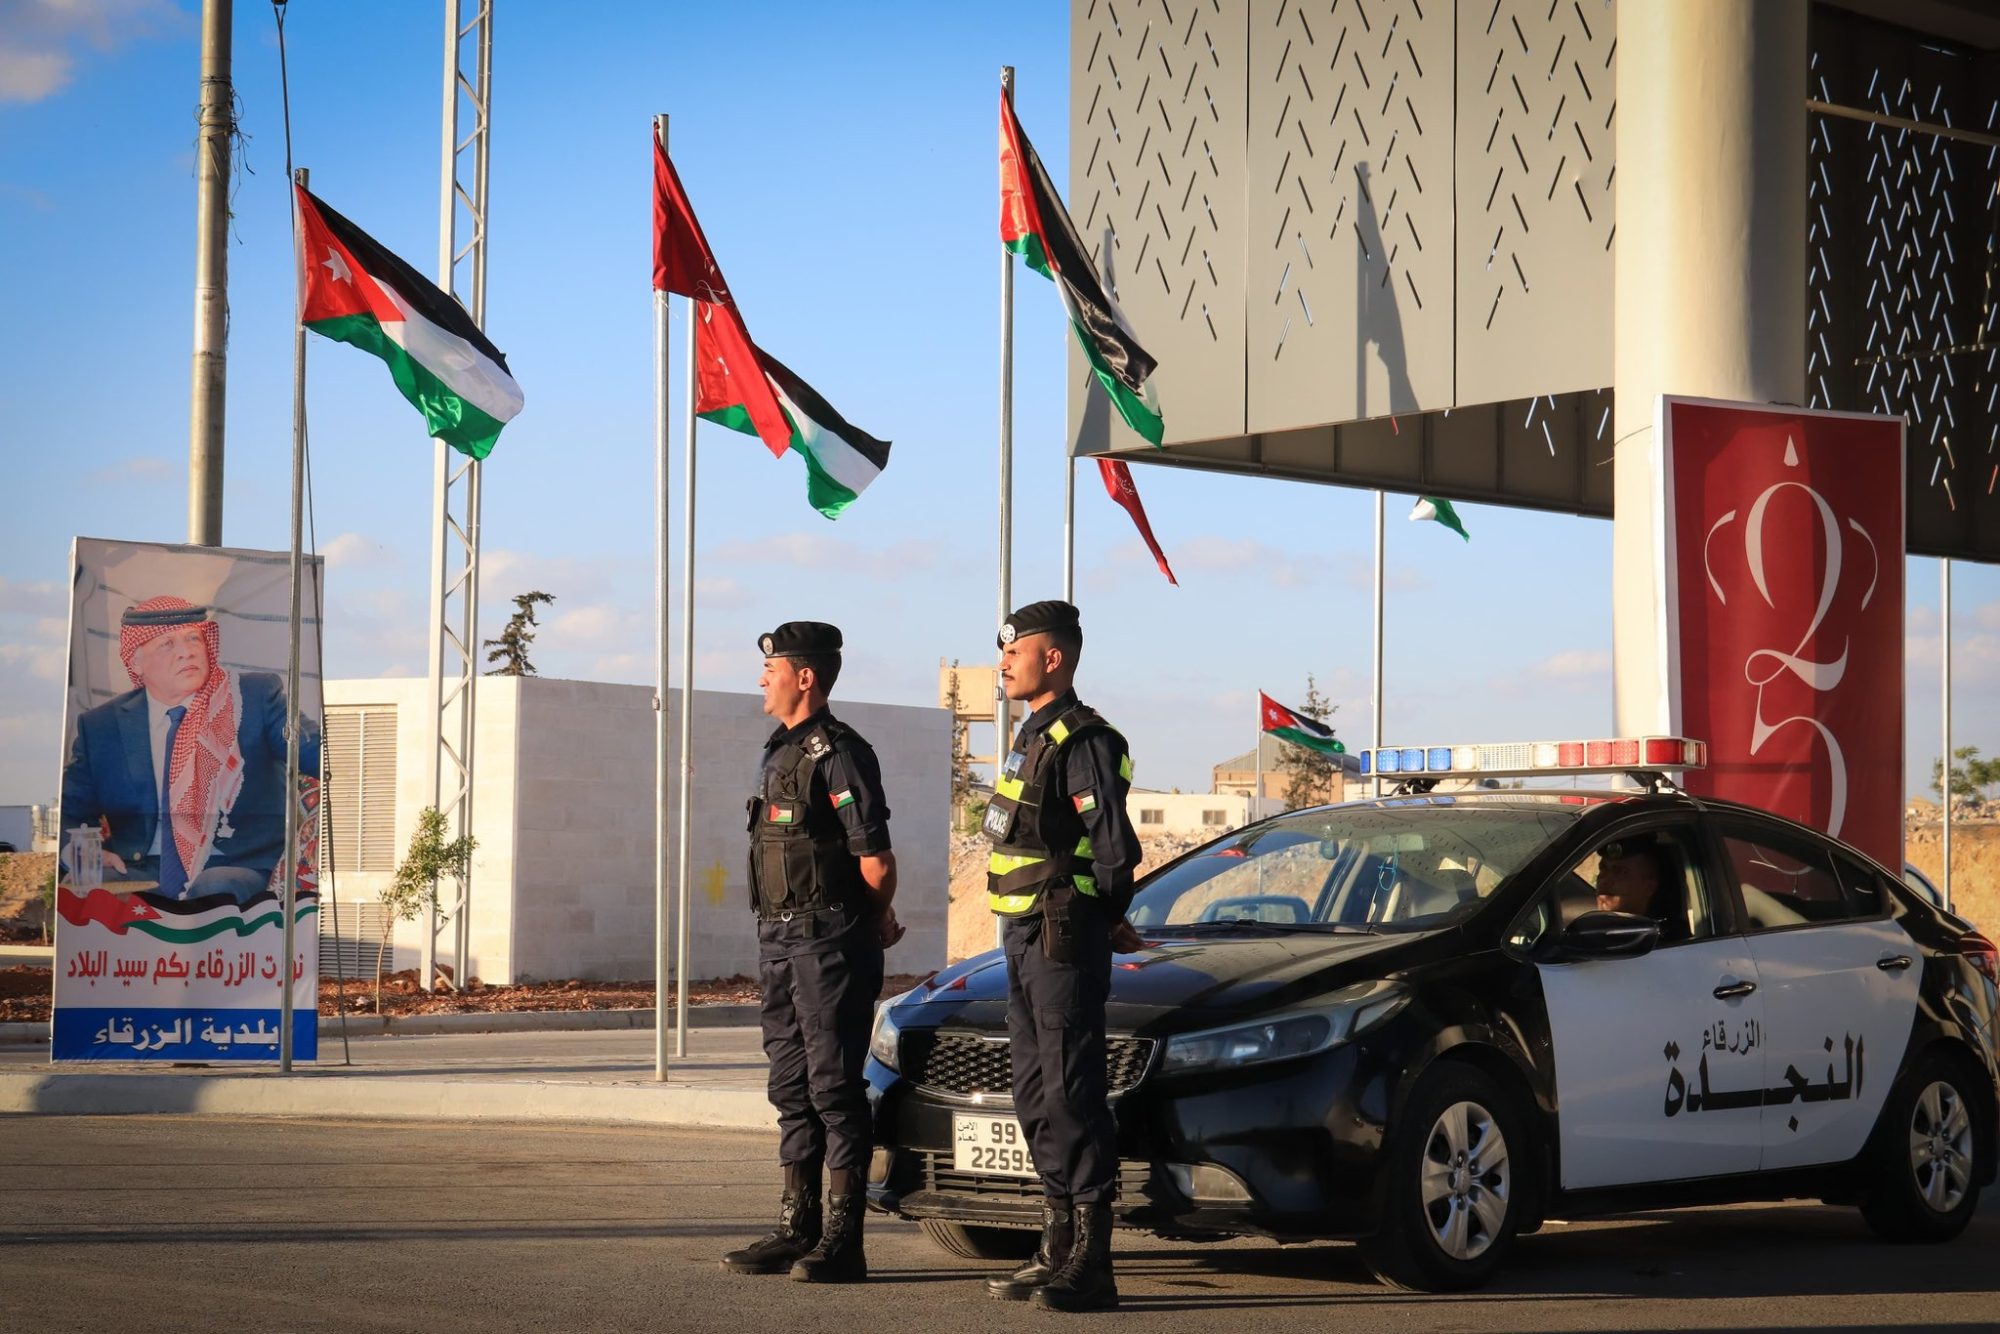 حماس وجماعة الإخوان المسلمين في الأردن يرفضون مزاعم نقلتها وكالة "رويترز" عن مصدرين أردنيين حول إحباط ما وصفتها بـ"المؤامرة الإيرانية" لتهريب أسلحة إلى المملكة